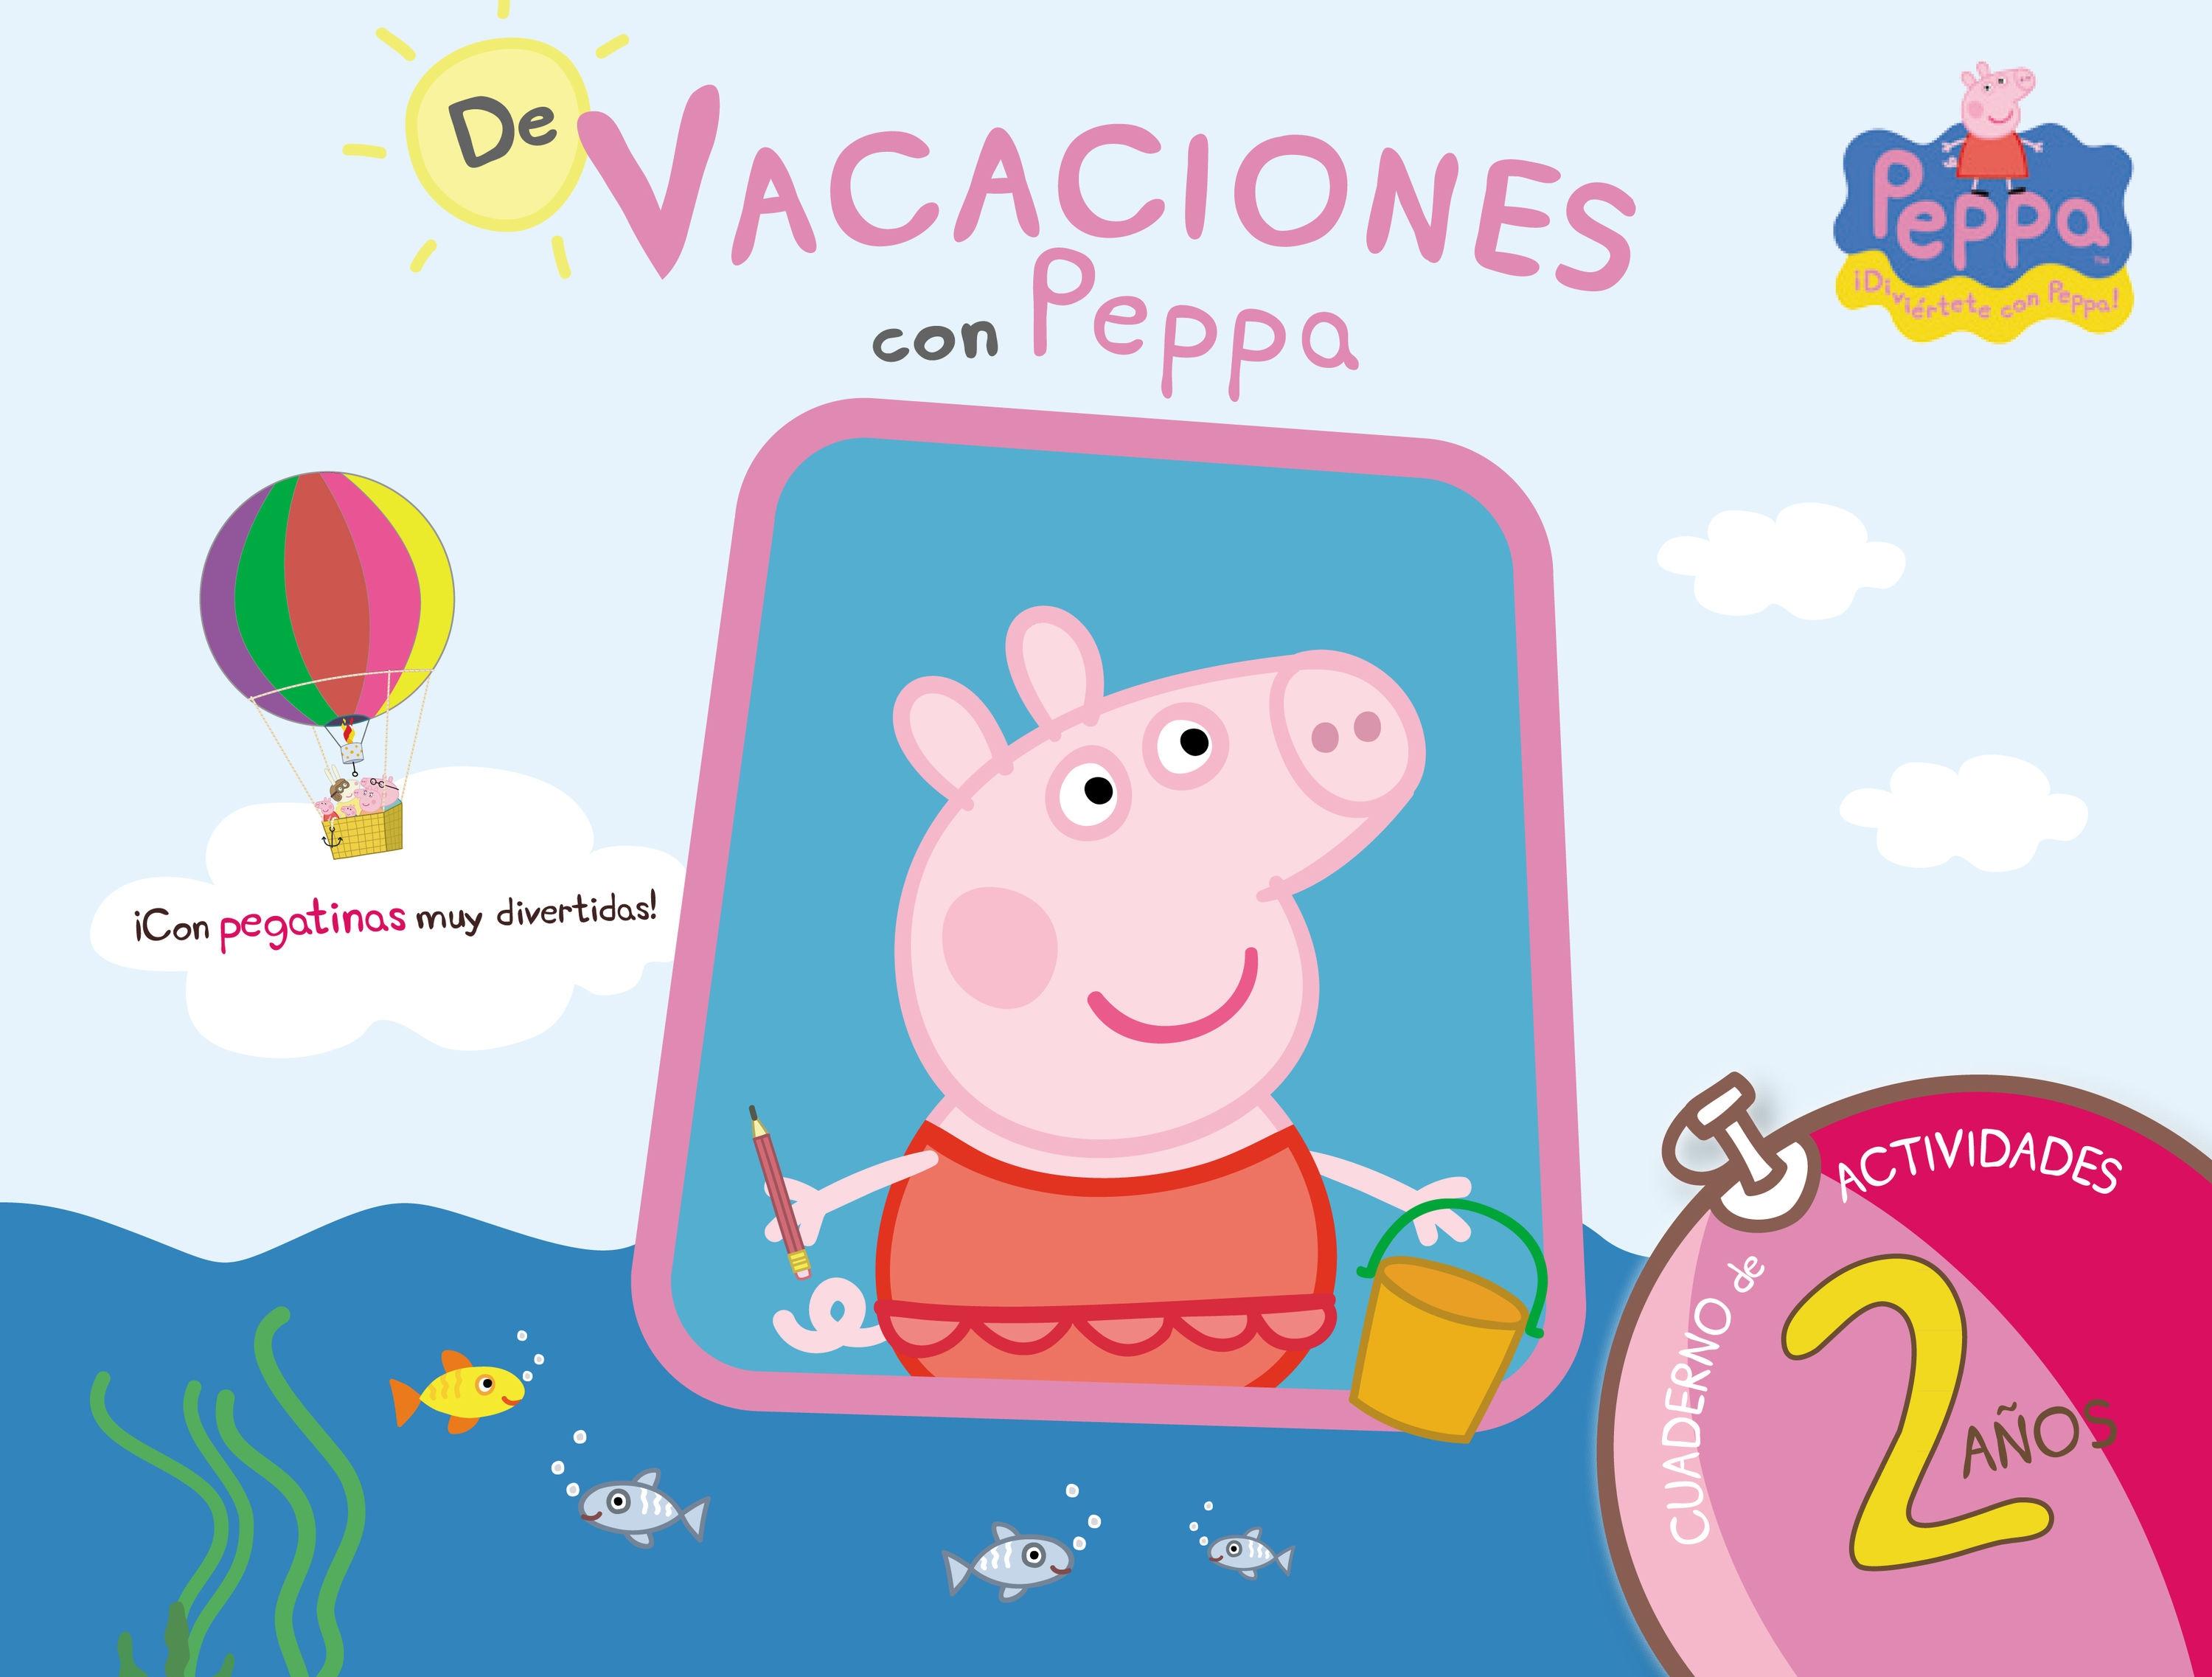 De Vacaciones con Peppa - 2 Años (Peppa Pig. Cuaderno de Actividades) "(Con Pegatinas)"